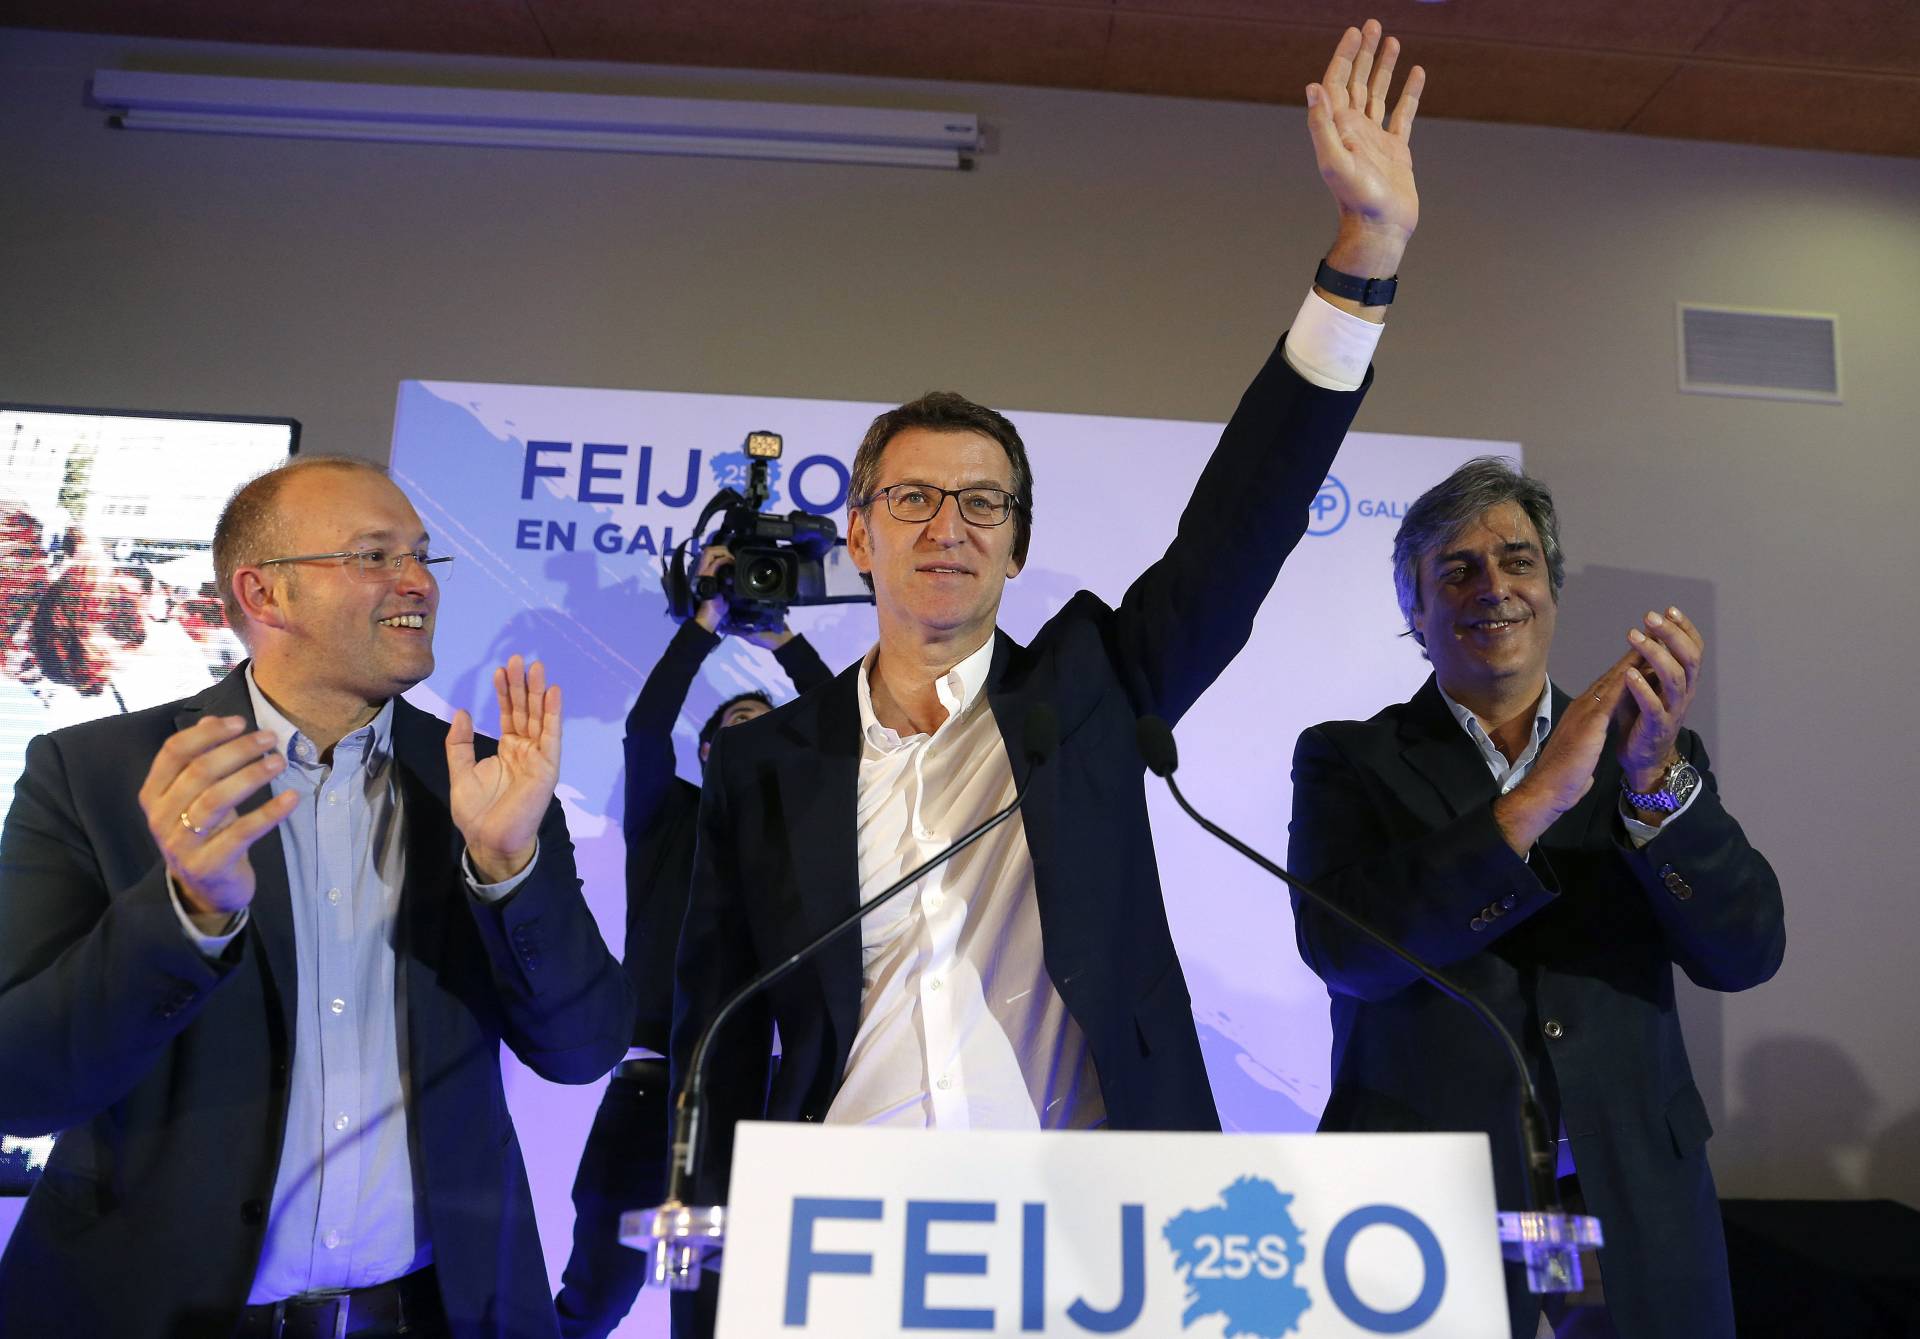 Un PP eufórico por Feijóo y "moderadamente contento" por Alonso